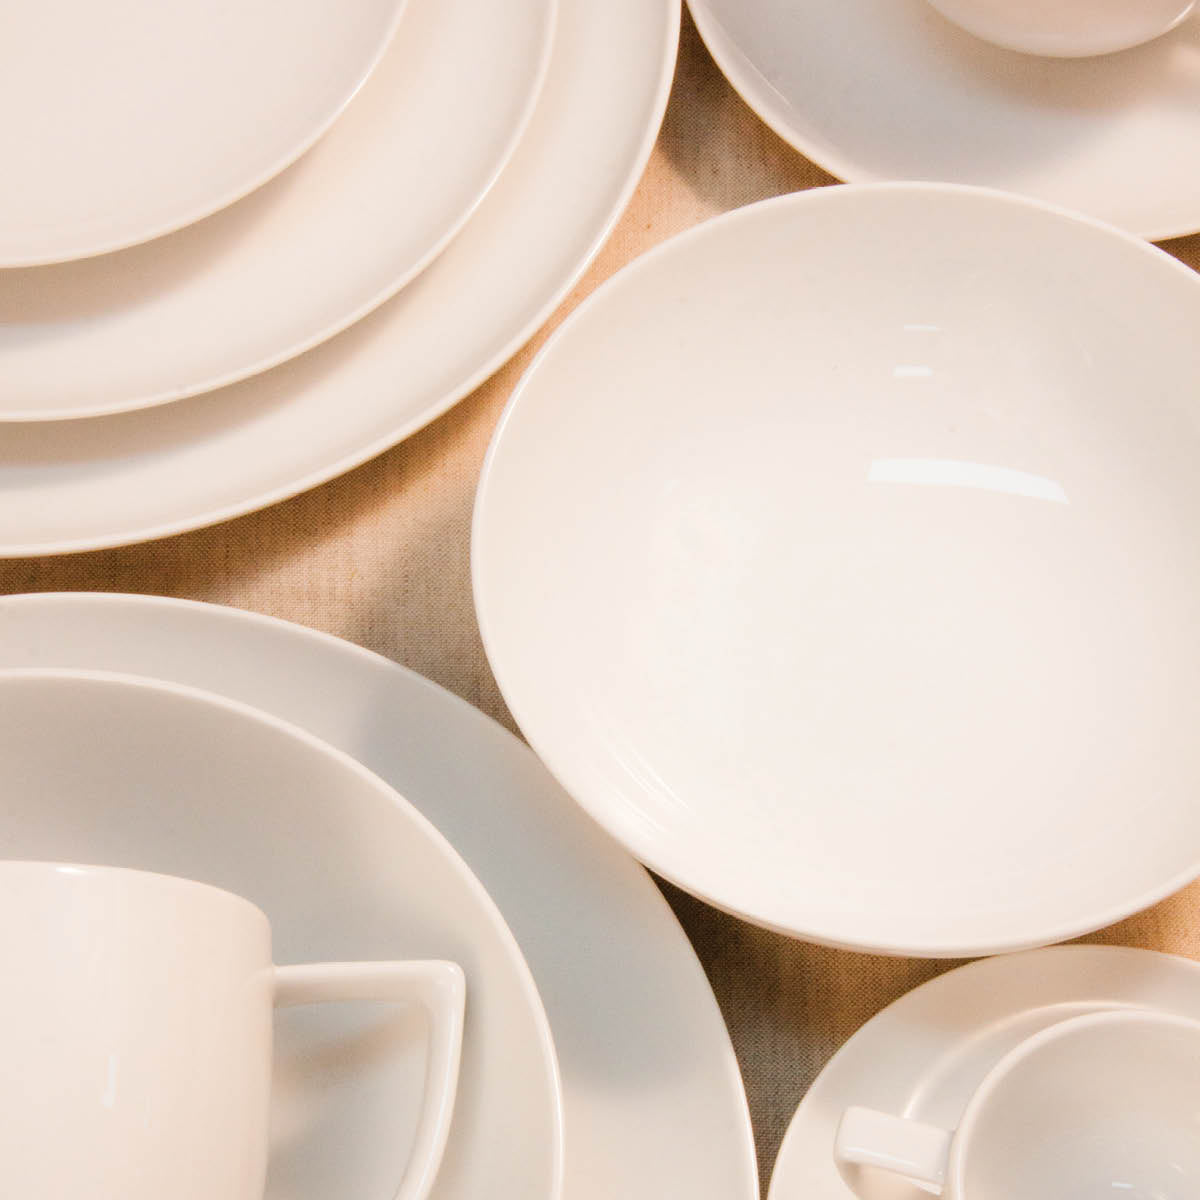 96478 Patra Porcelain Alto Pasta Bowl (410373) Tomkin Australia Hospitality Supplies